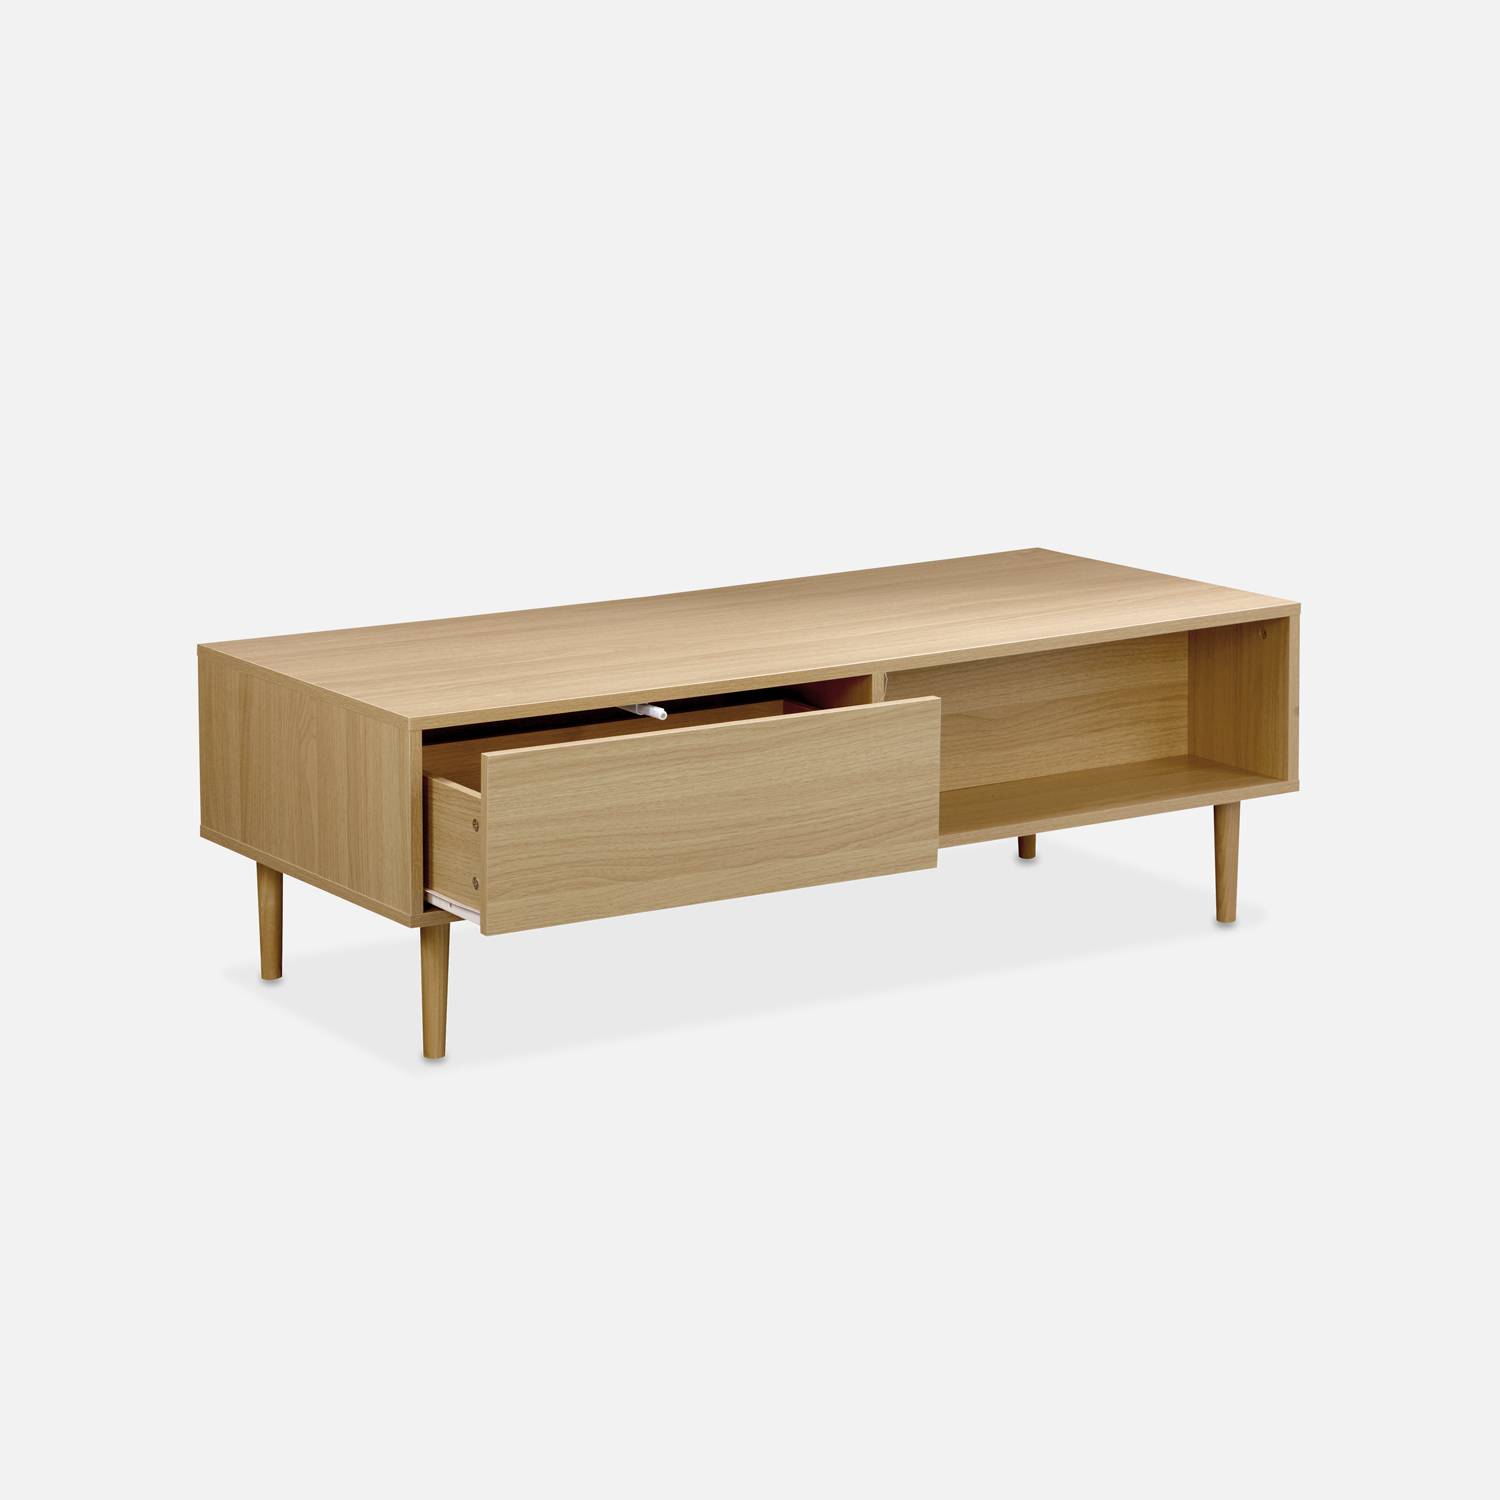 Table basse en décor bois - Mika - 2 tiroirs, 2 espaces de rangement, L 120 x l 55 x H 40cm,sweeek,Photo4